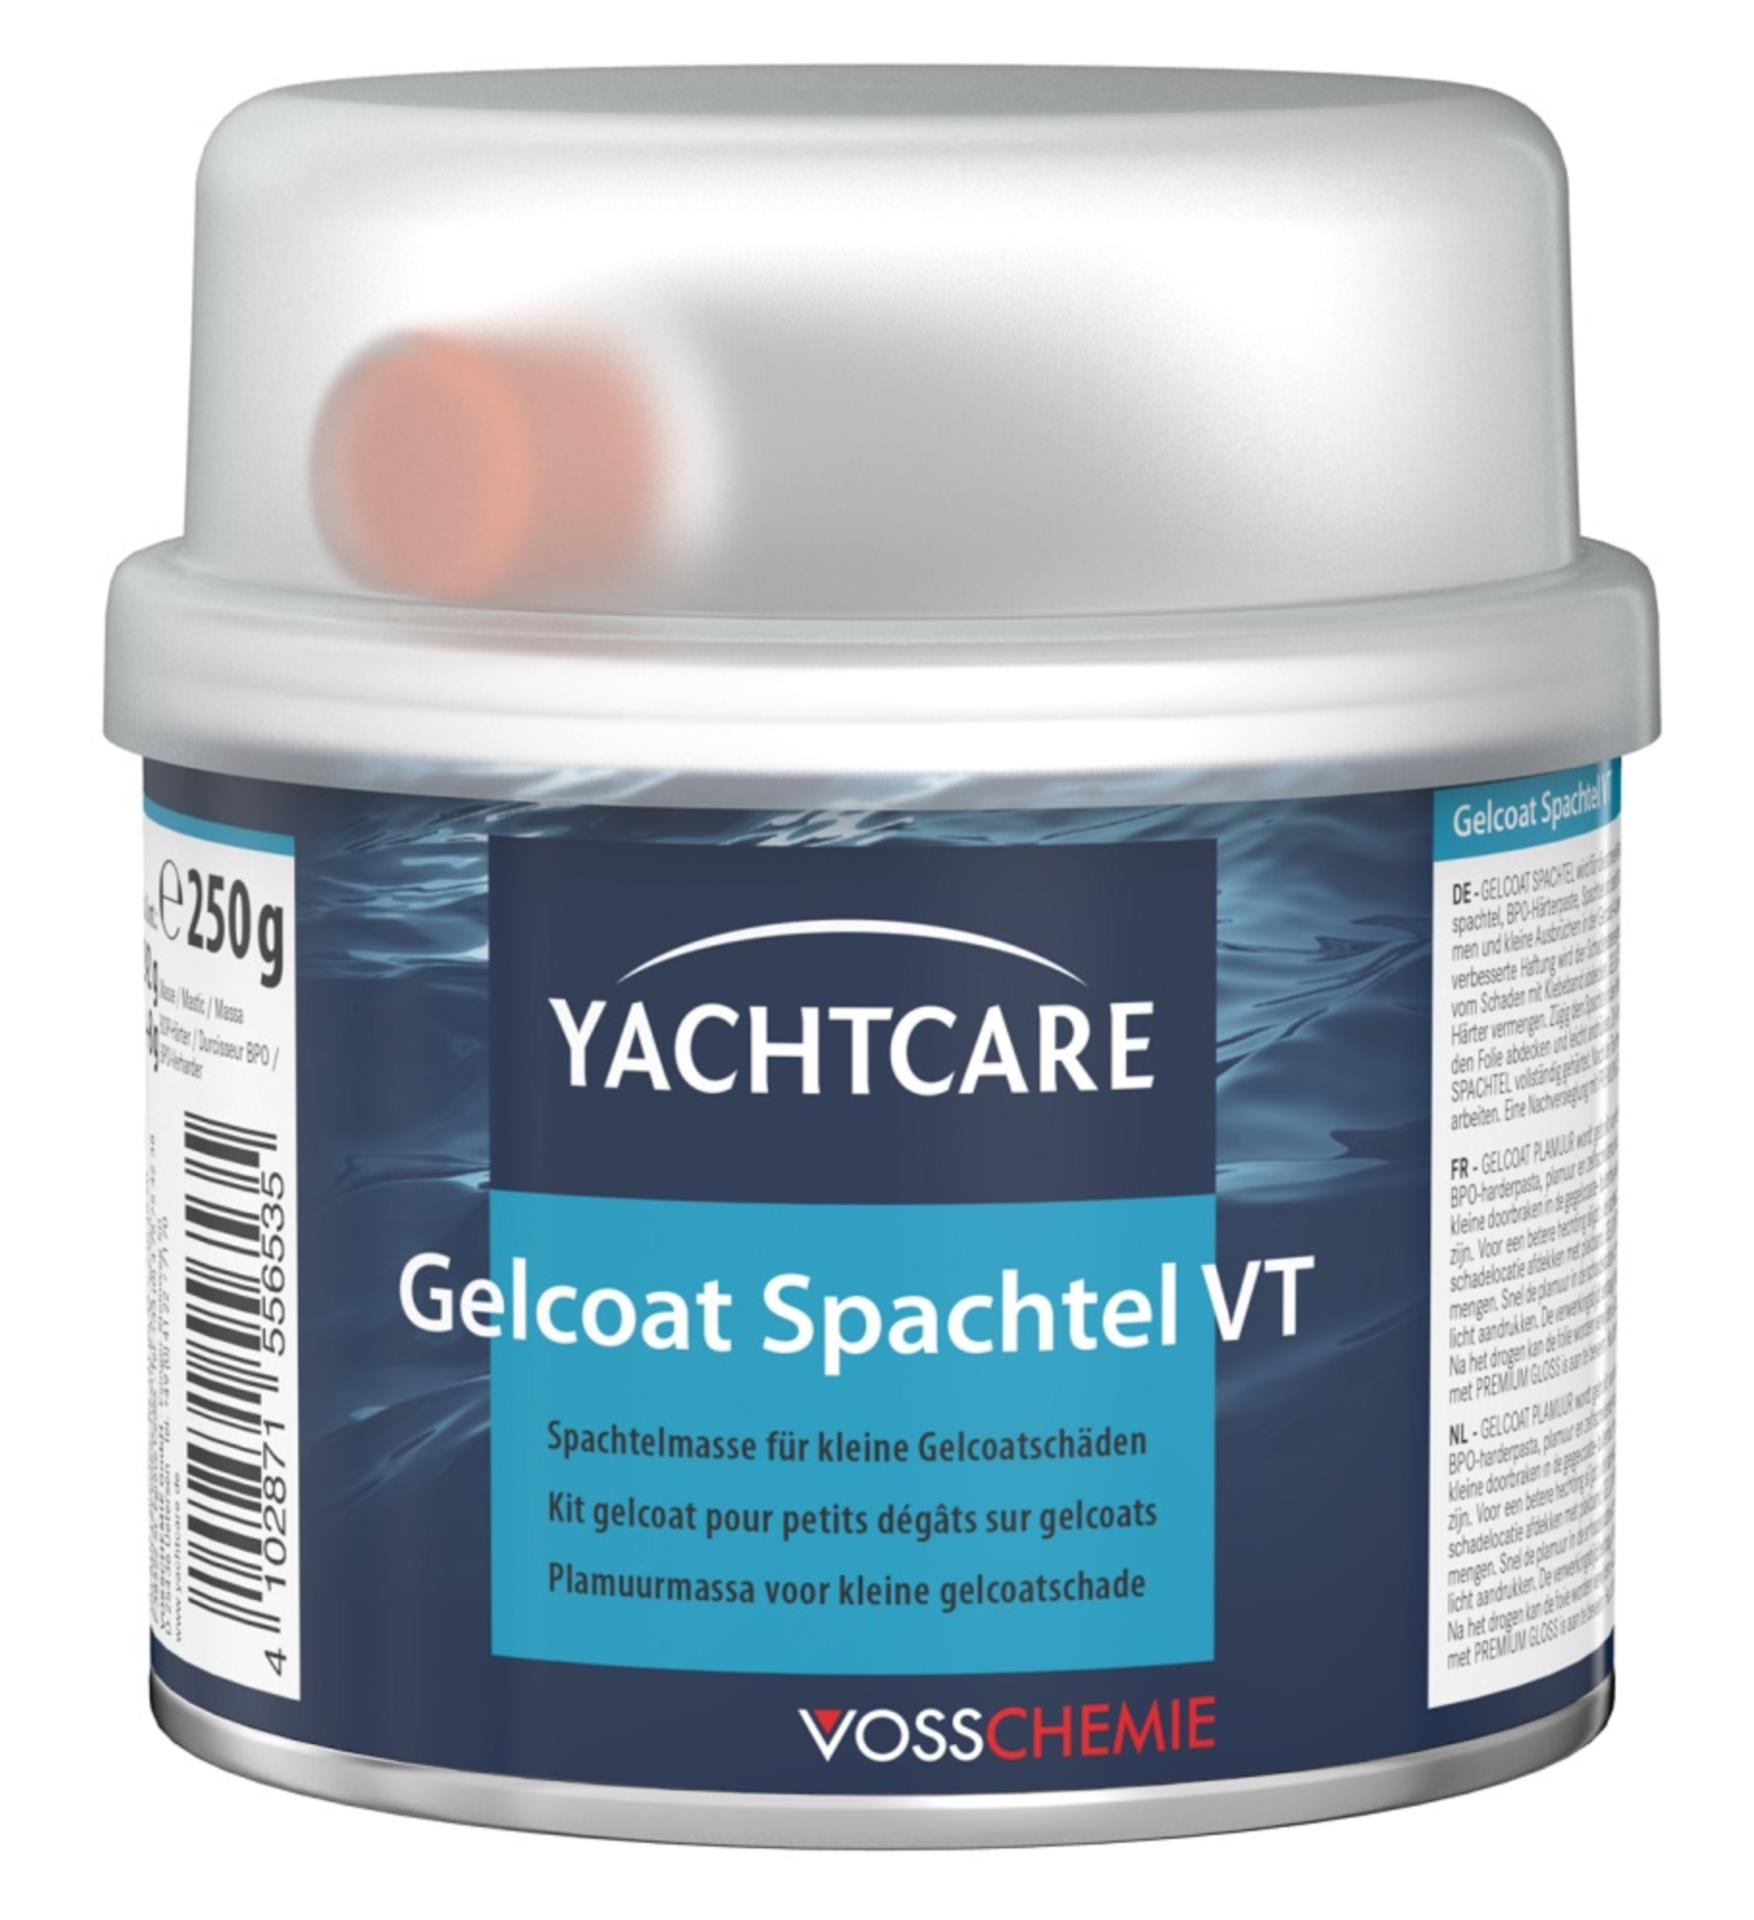 Yachtcare Gelcoat Reparatur VT Set weiß 9010, 200 gr. ka